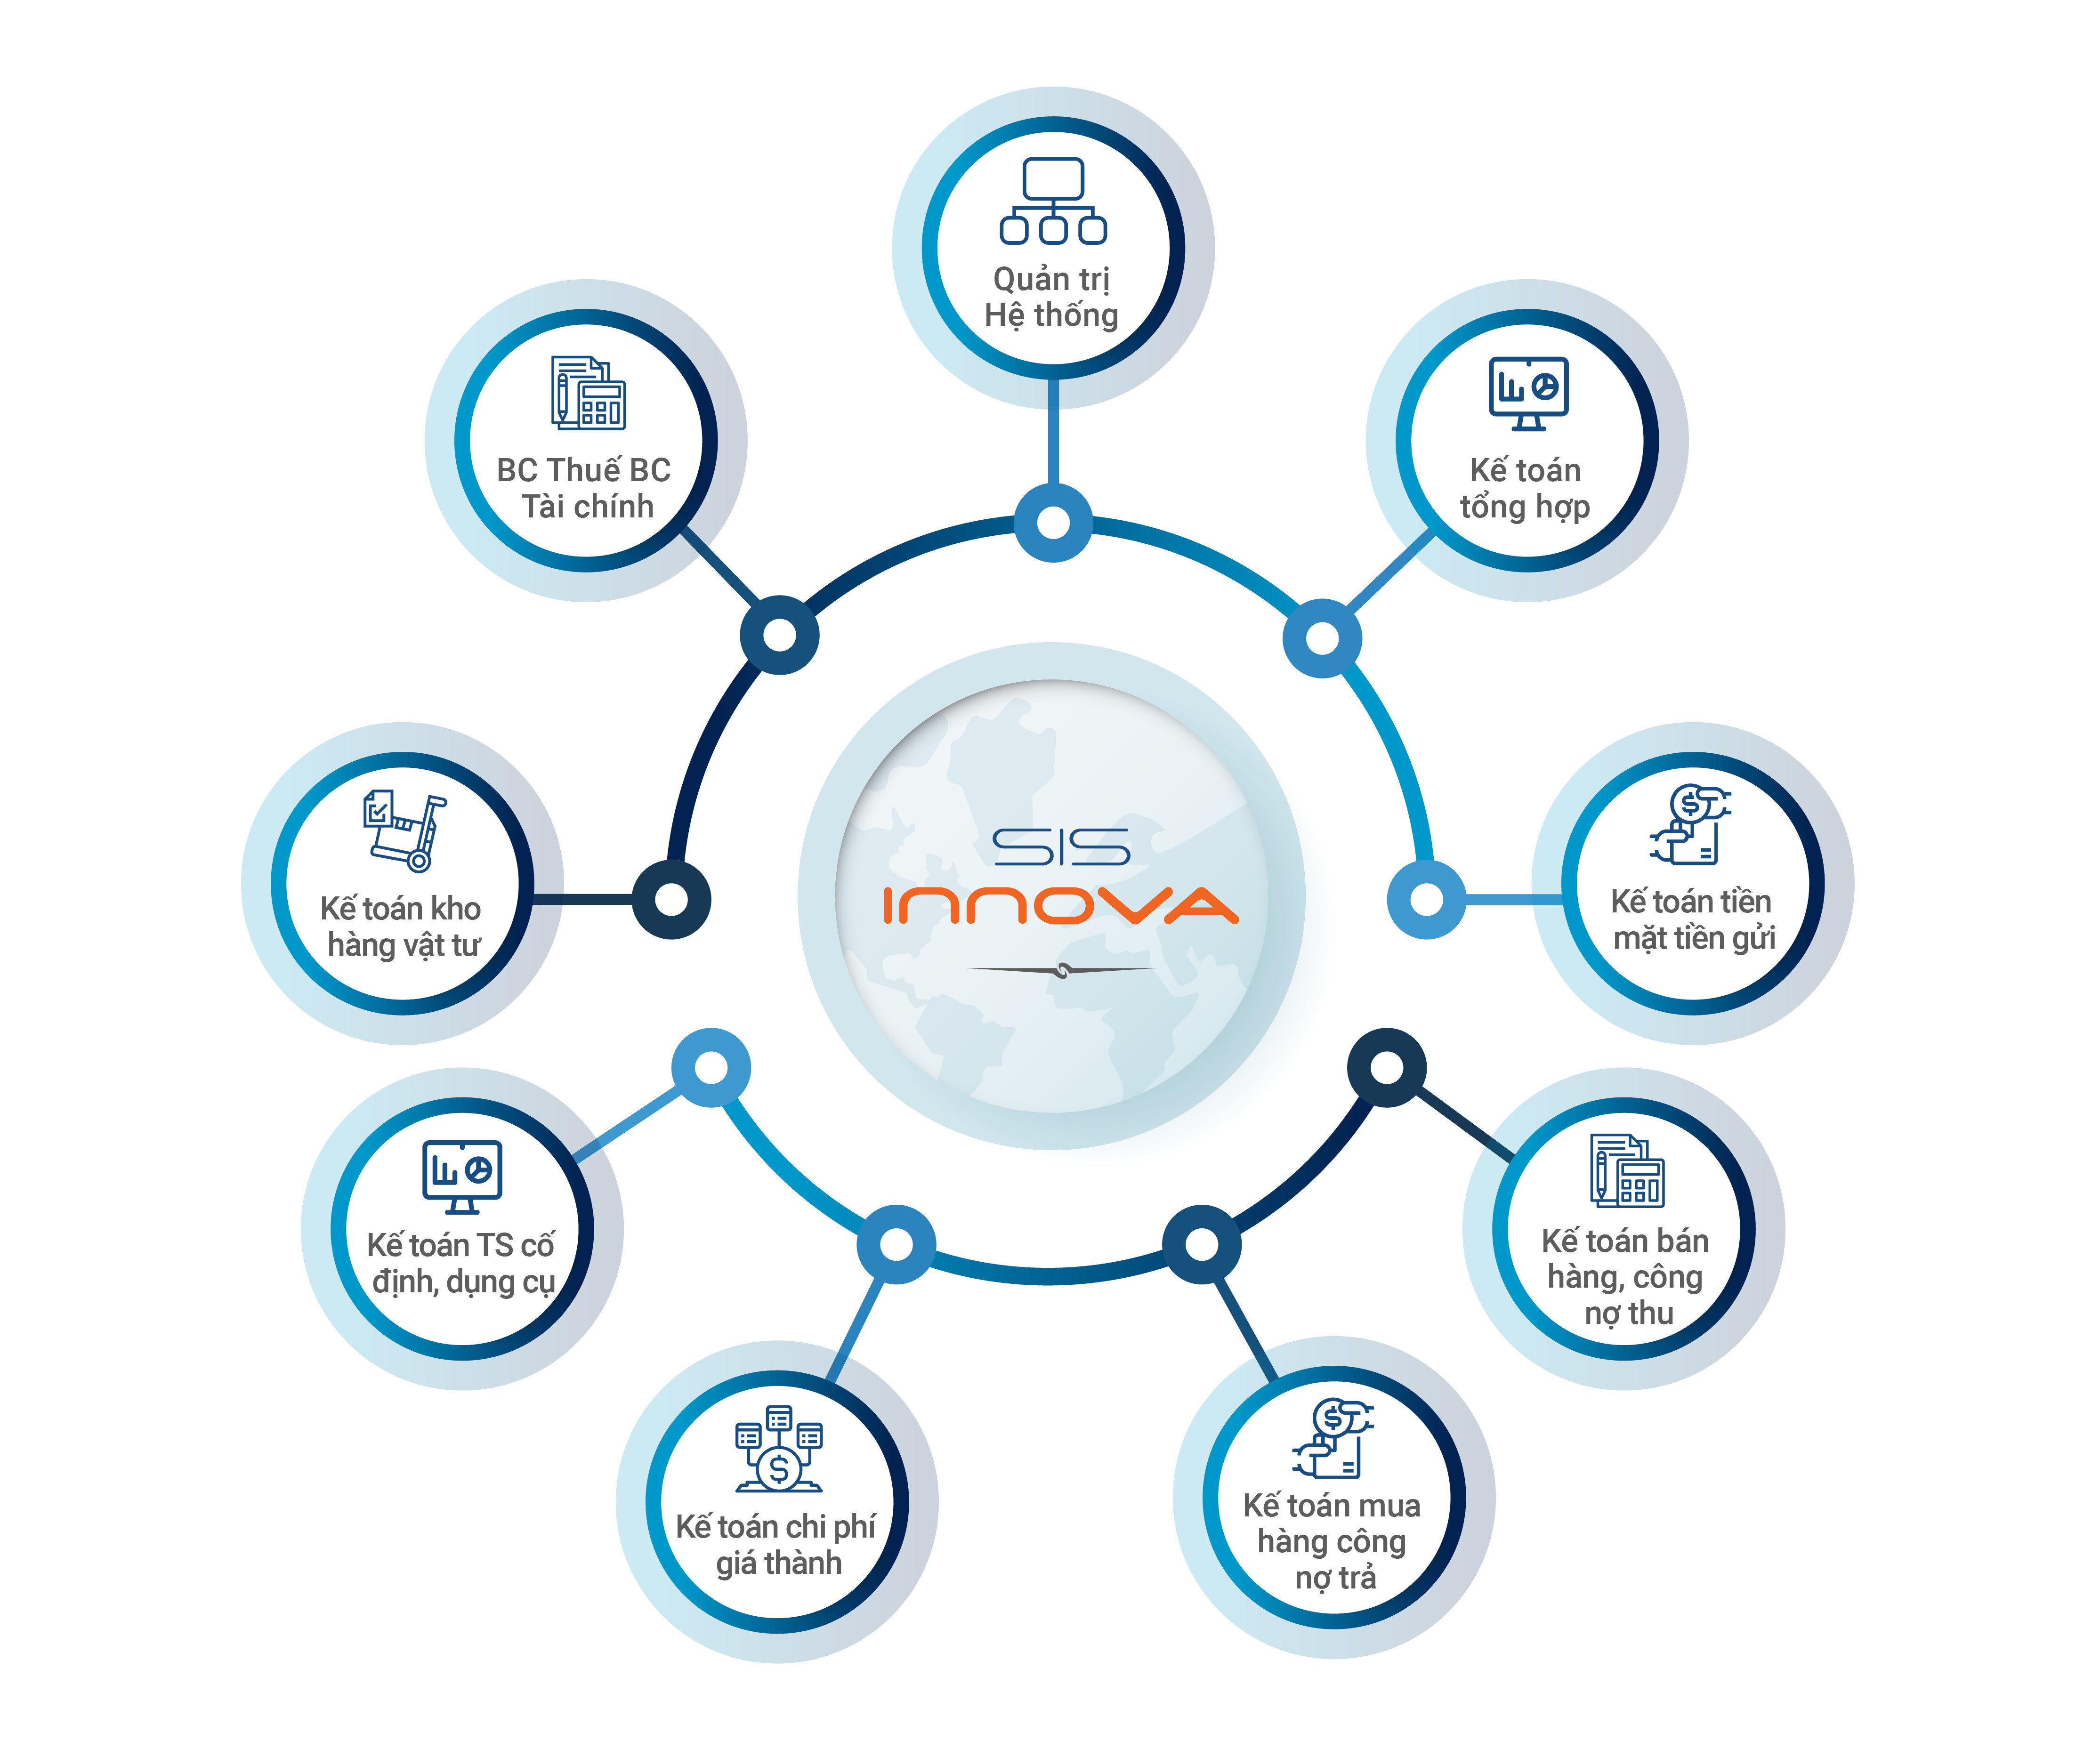 Phần mềm kế toán quản trị SIS INNOVA 9.0 dành cho doanh nghiệp Sản xuất - Xây lắp. Hàng chính hãng - Hỗ trợ mọi nghiệp vụ doanh nghiệp - Nhanh chóng, an toàn, tiện ích - Đầy đủ phân hệ kế toán - Cập nhật thông tư liên tục. Có thể sử dụng ONLINE